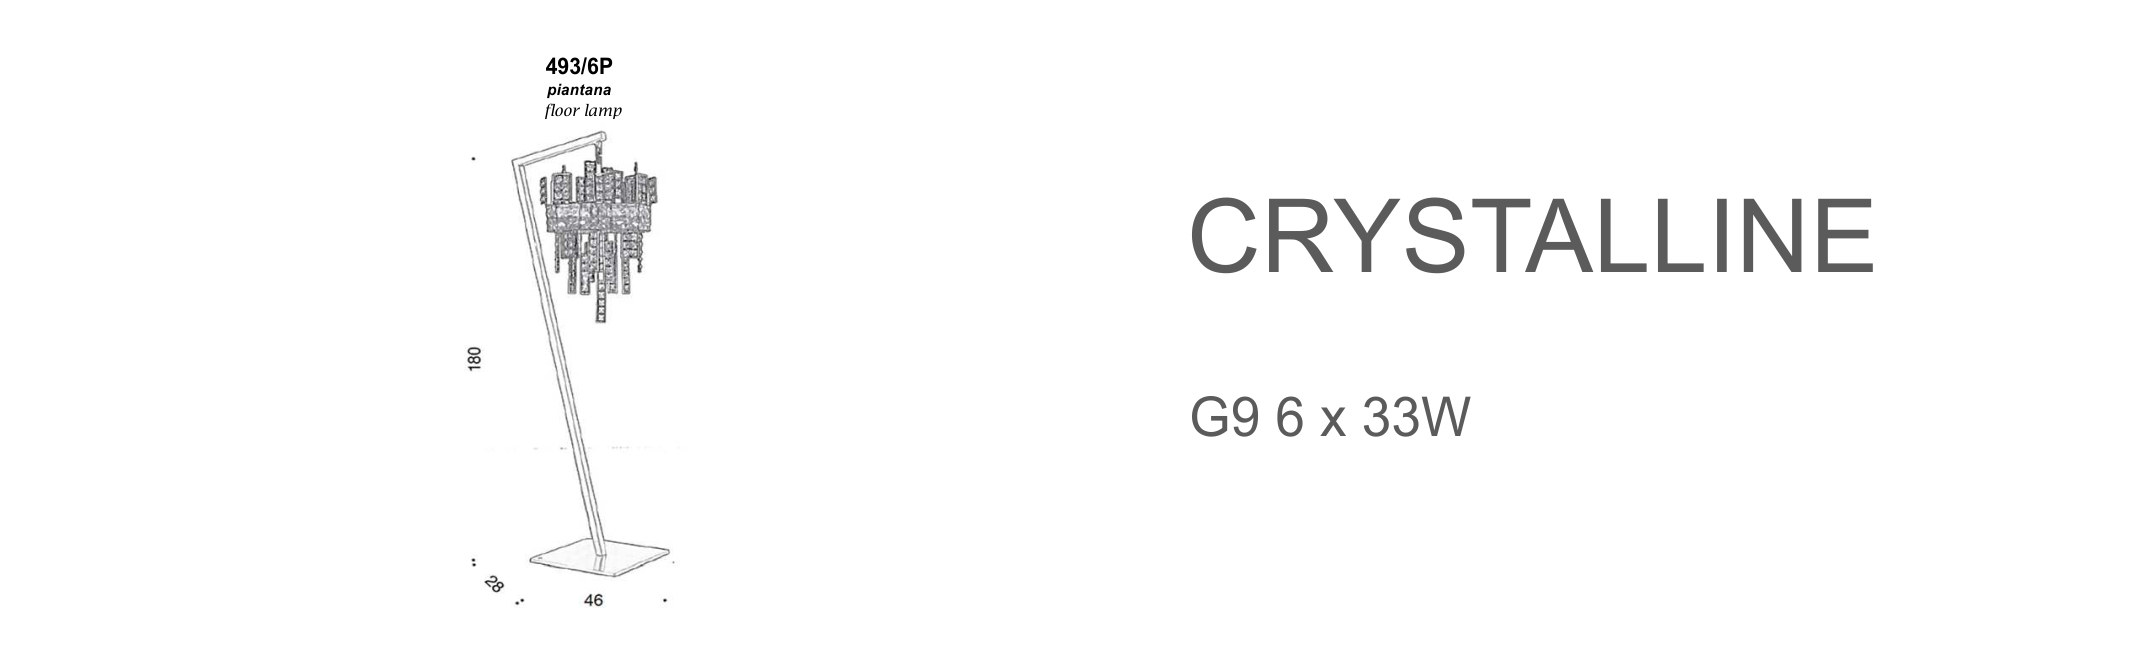 Crystalline 493/6P